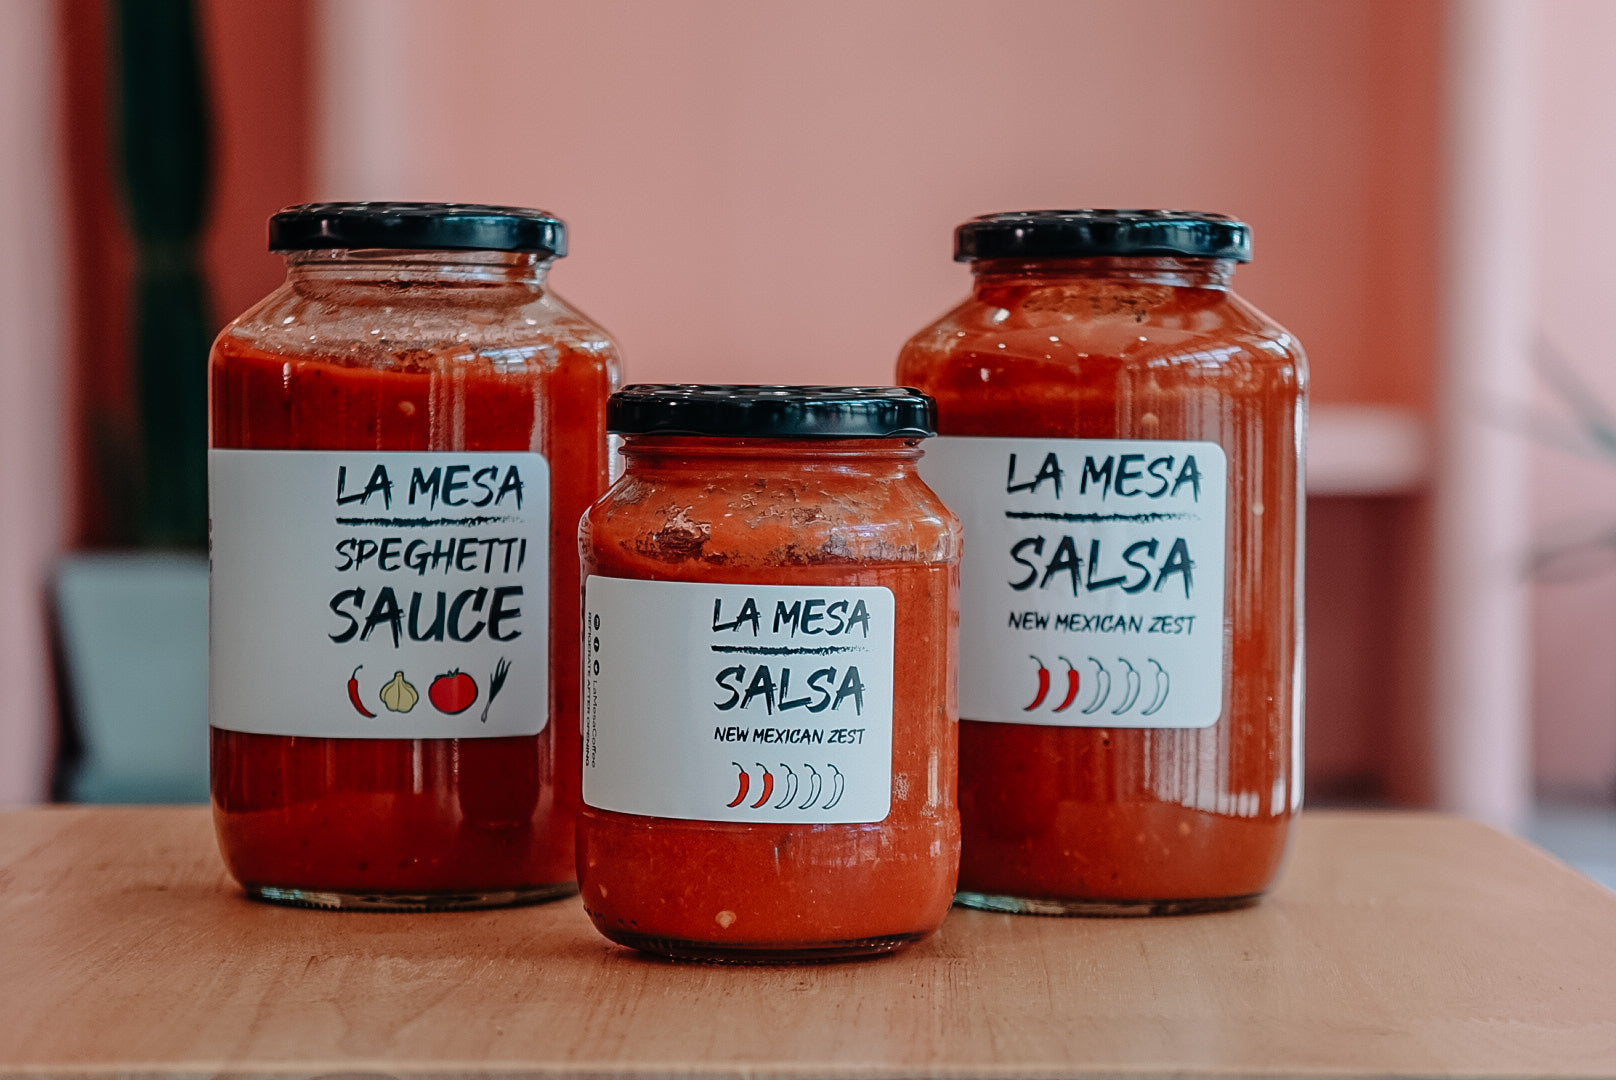 La Mesa Speghetti Sauce 24oz (Spaghetti Sauce)